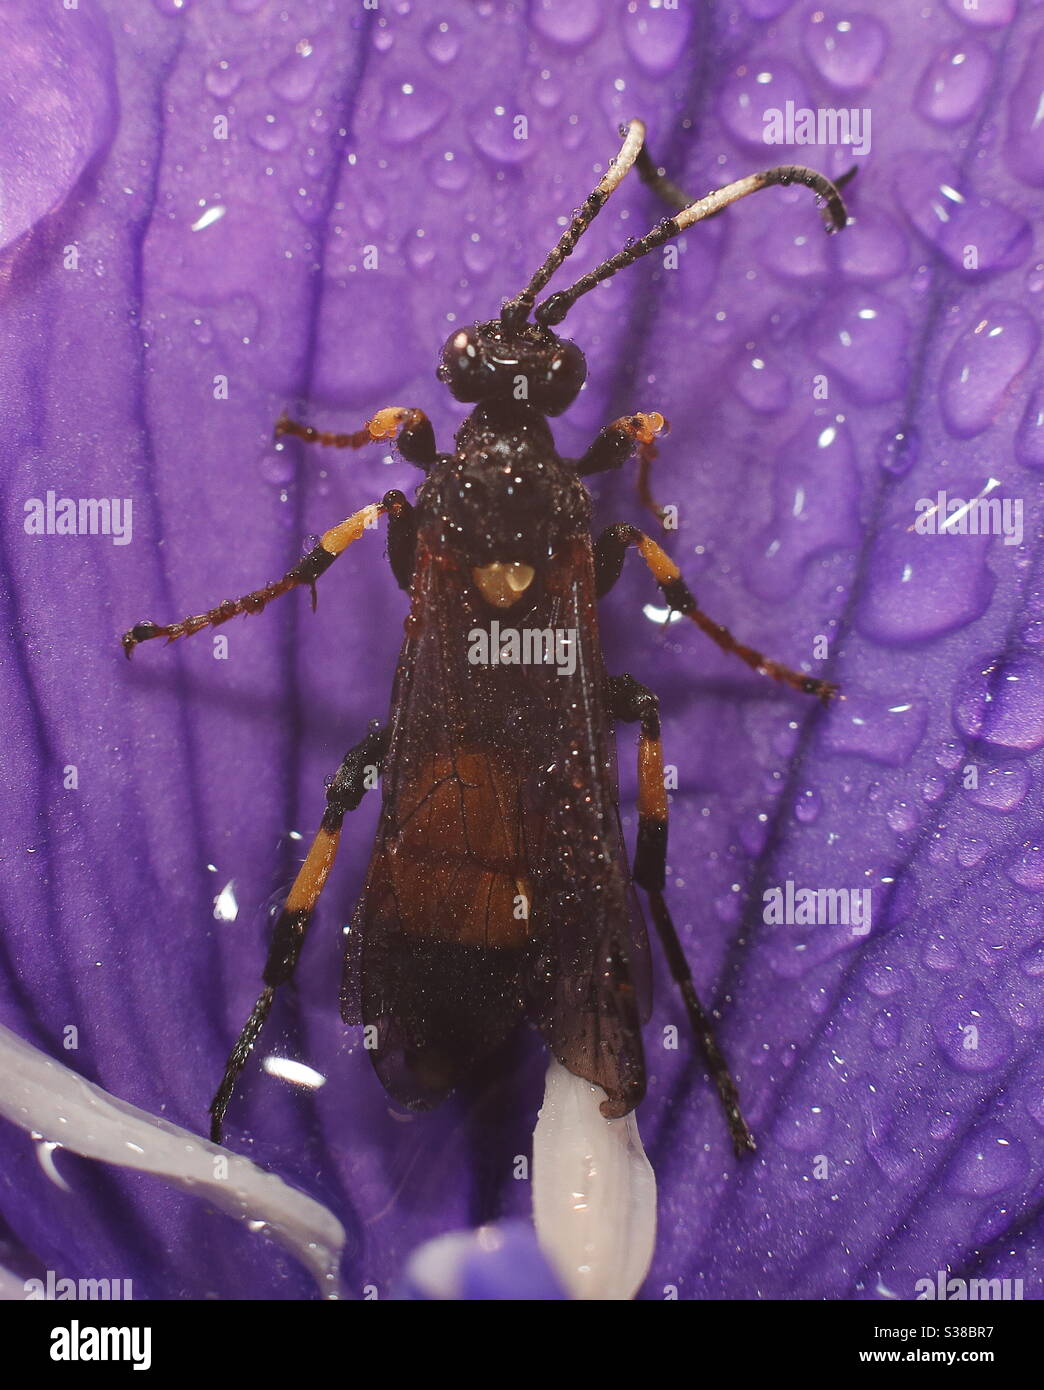 Macro Photography- Beetle wasp Stock Photo